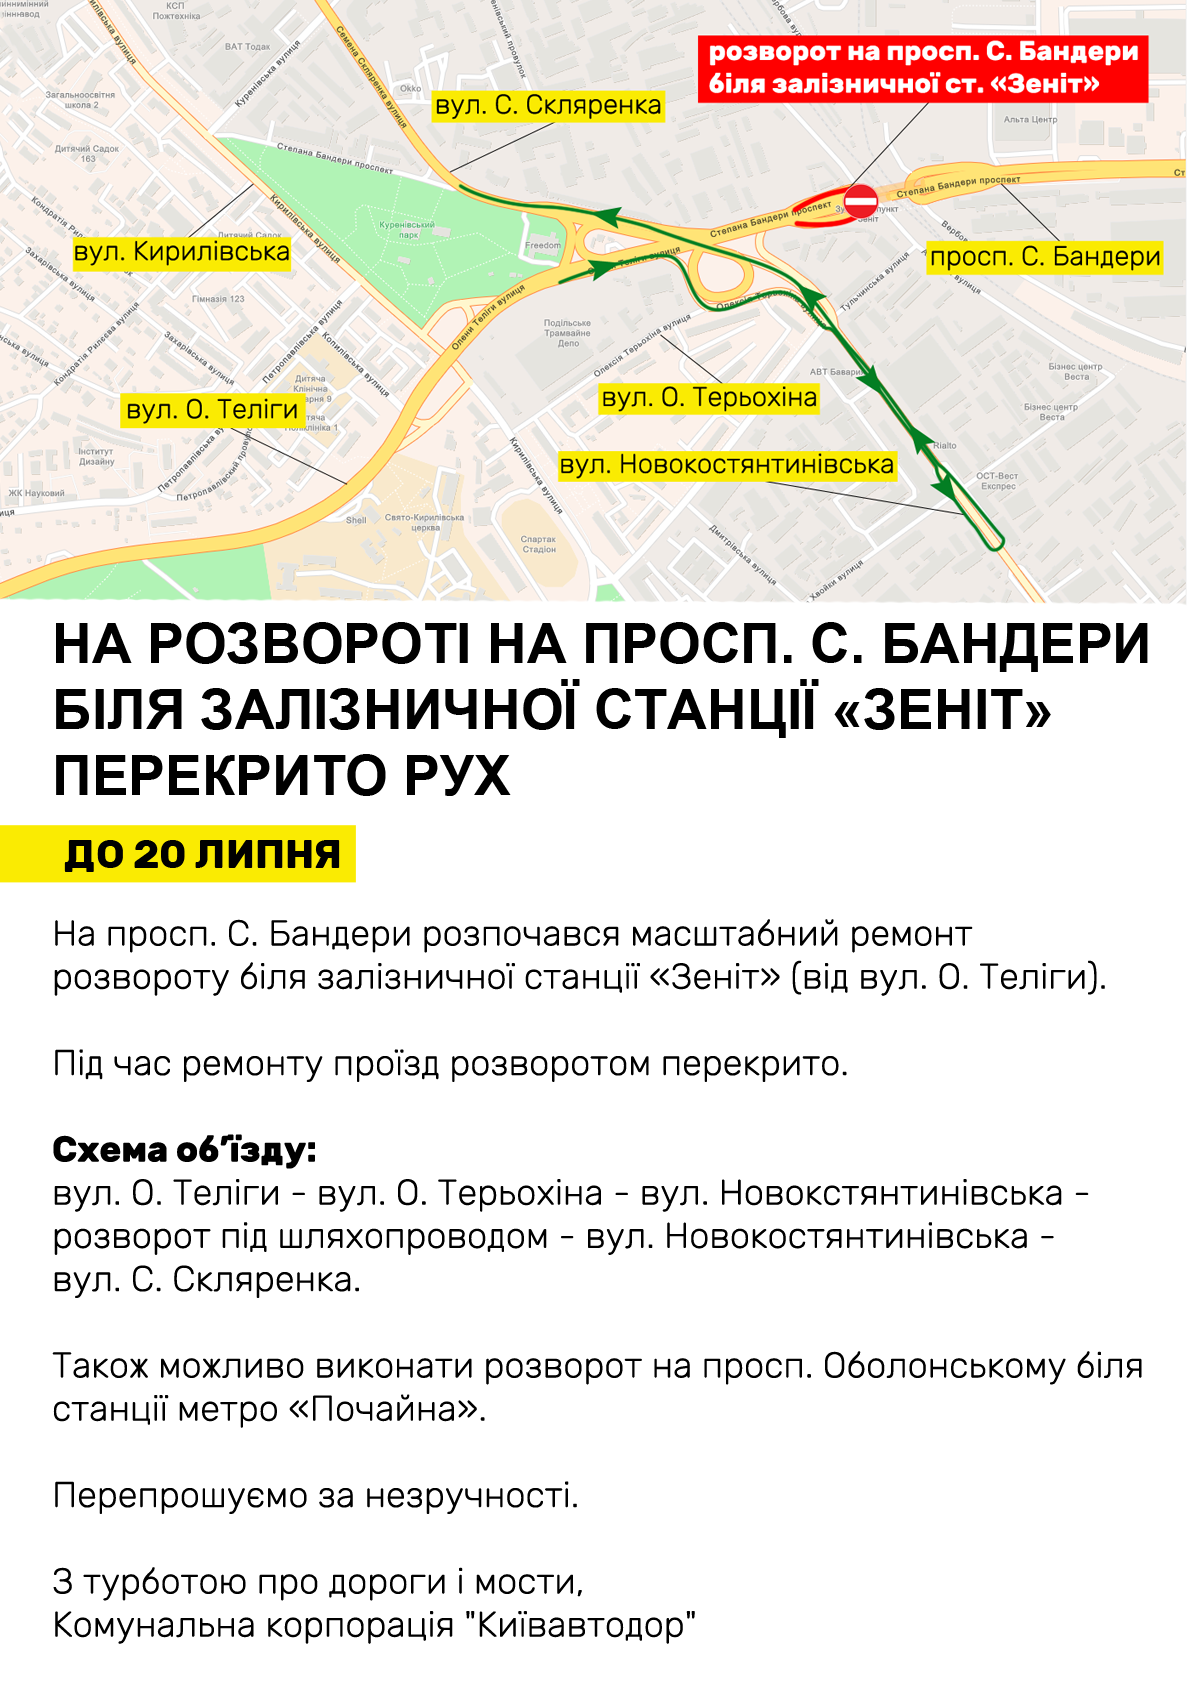 У Києві закрили розворот на проспекті Степана Бандери.